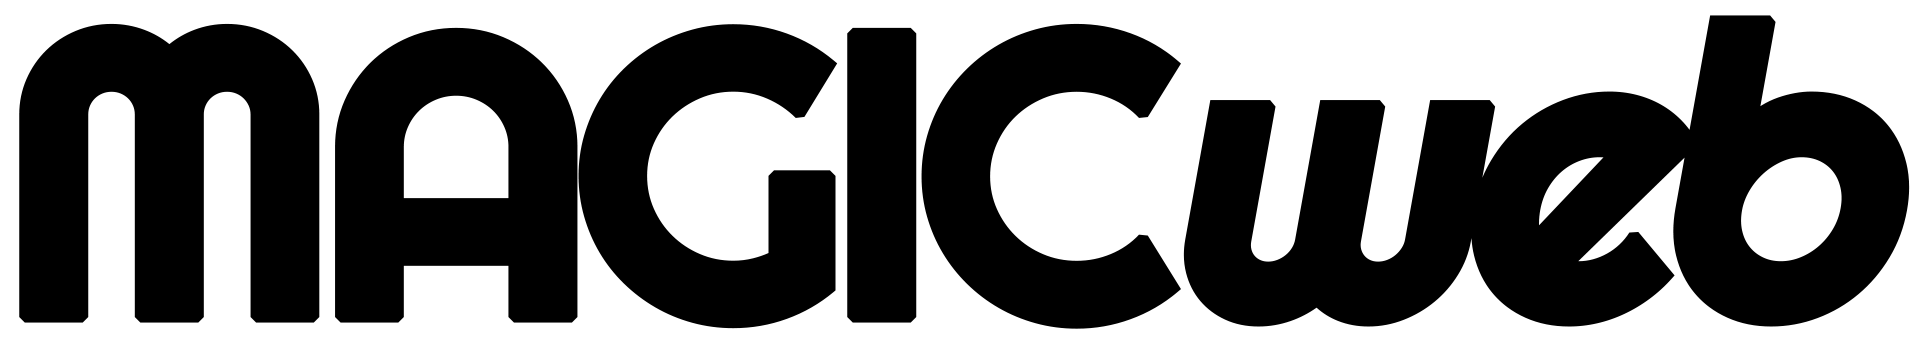 Magicweb.dk sort logo png (gennemsigtig baggrund)